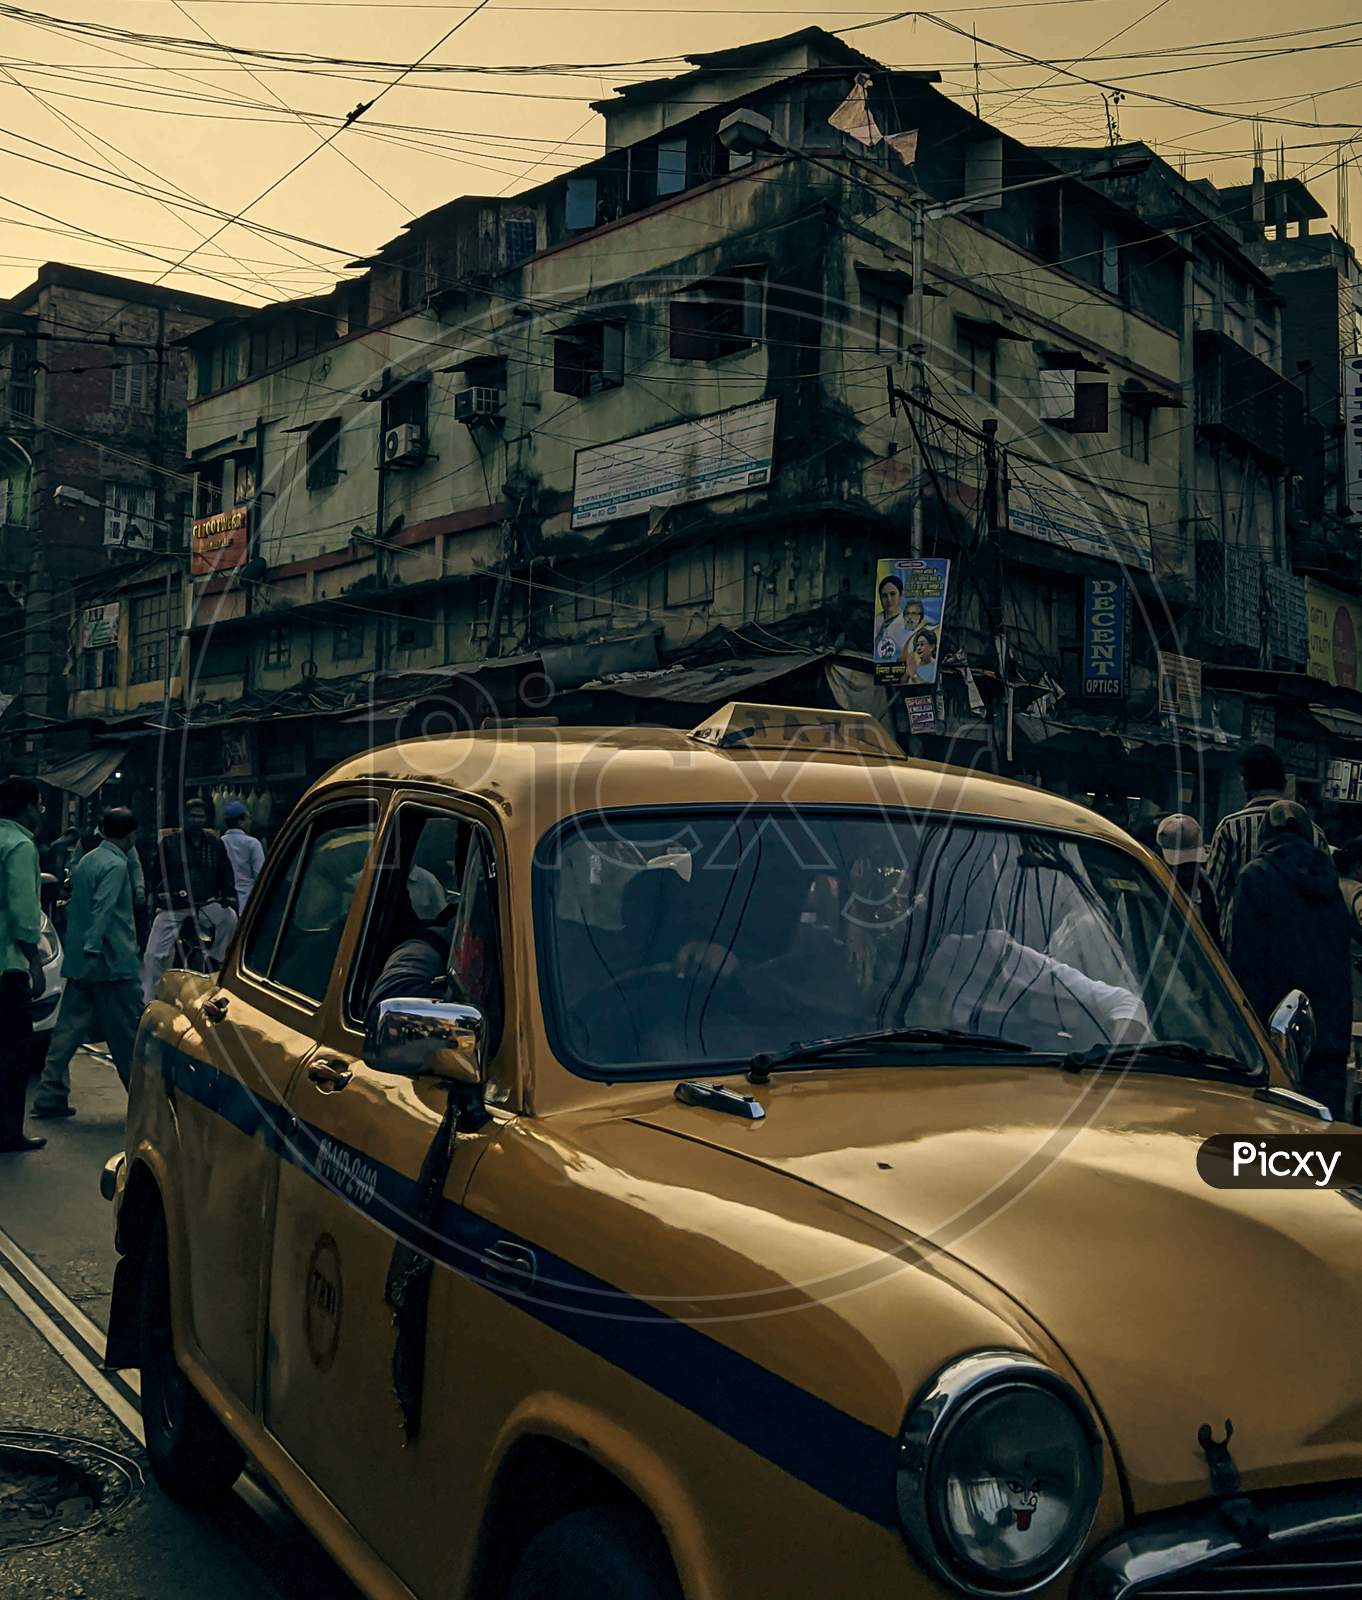 Kolkata and its historic yellow taxies